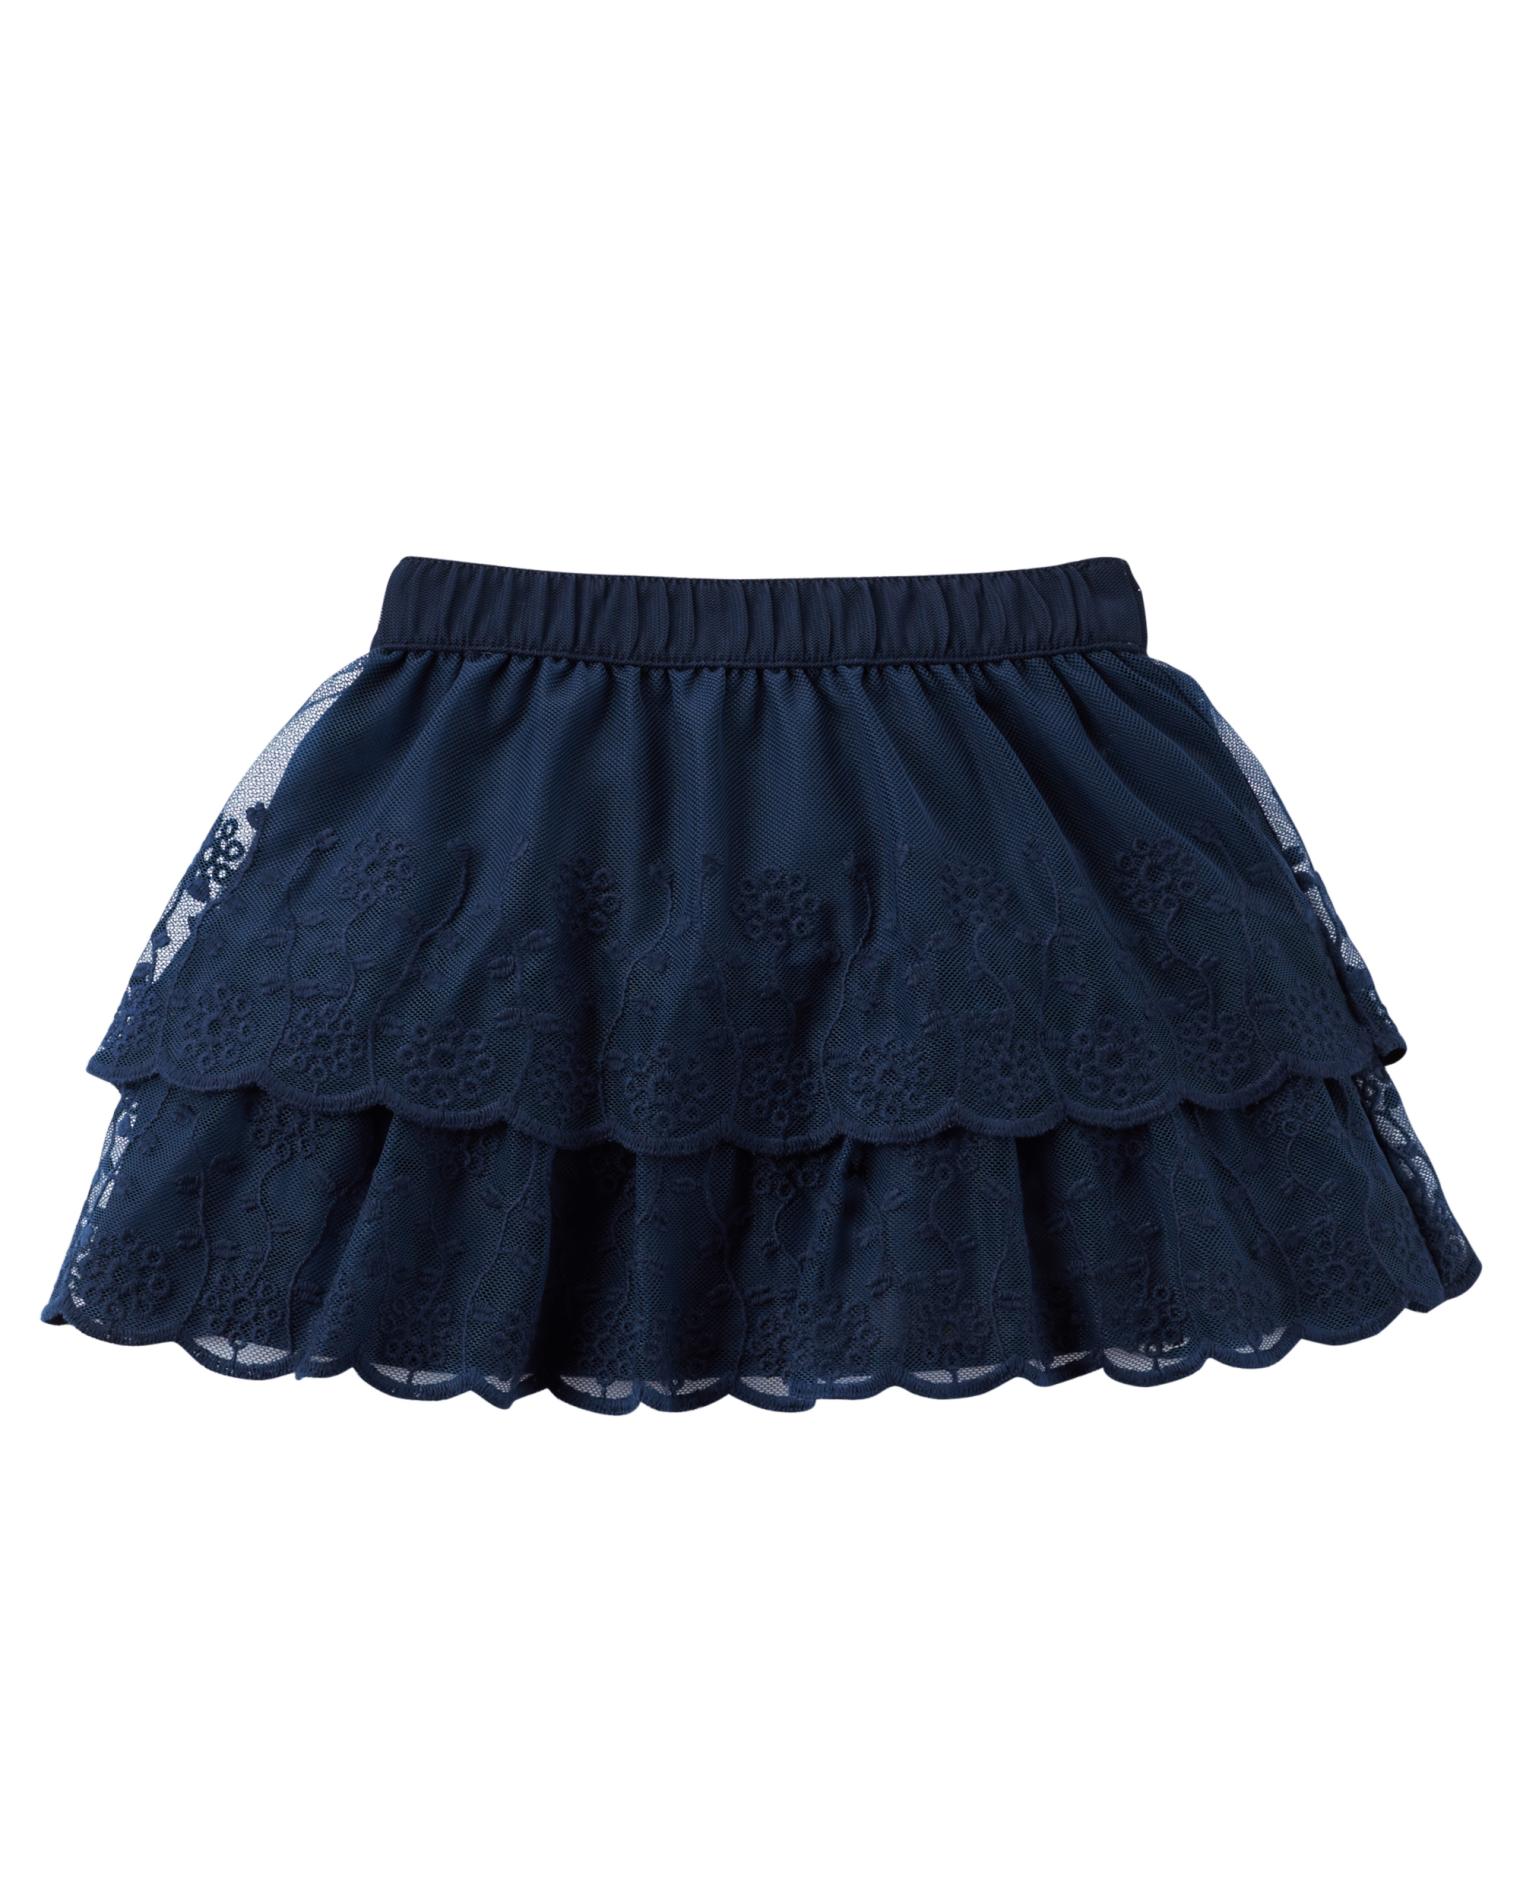 Carter's Girls' Lace Skirt